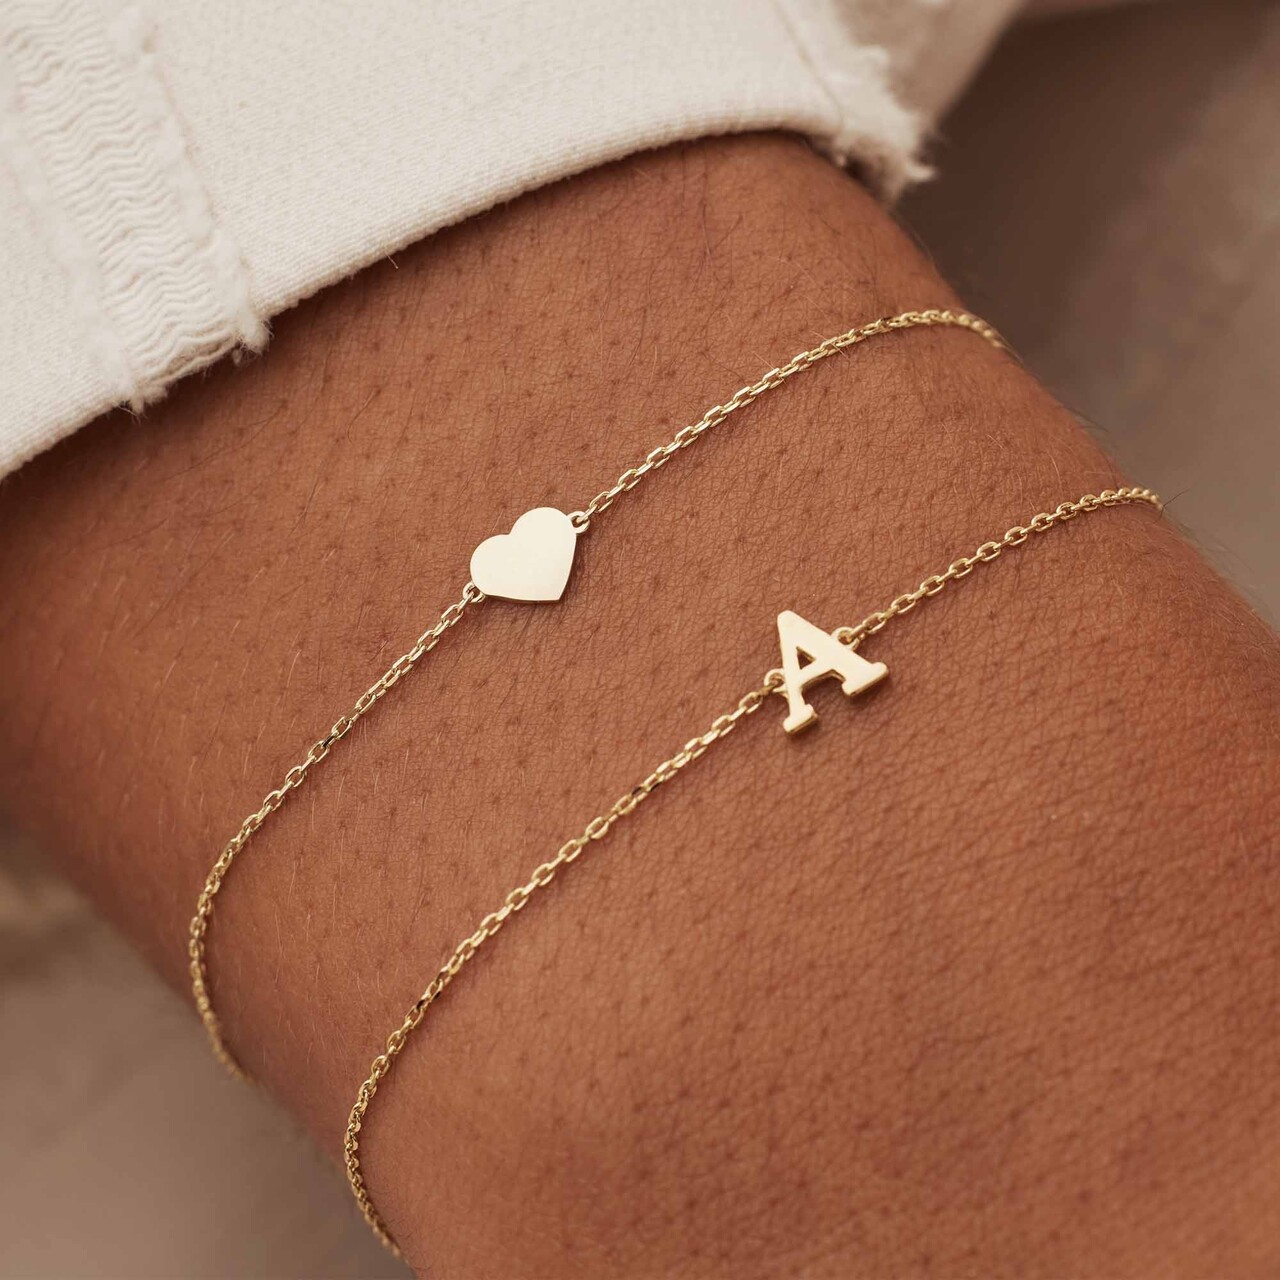 Bracelet initial zirconia | personalize - gold – Jewel Junkie Curaçao